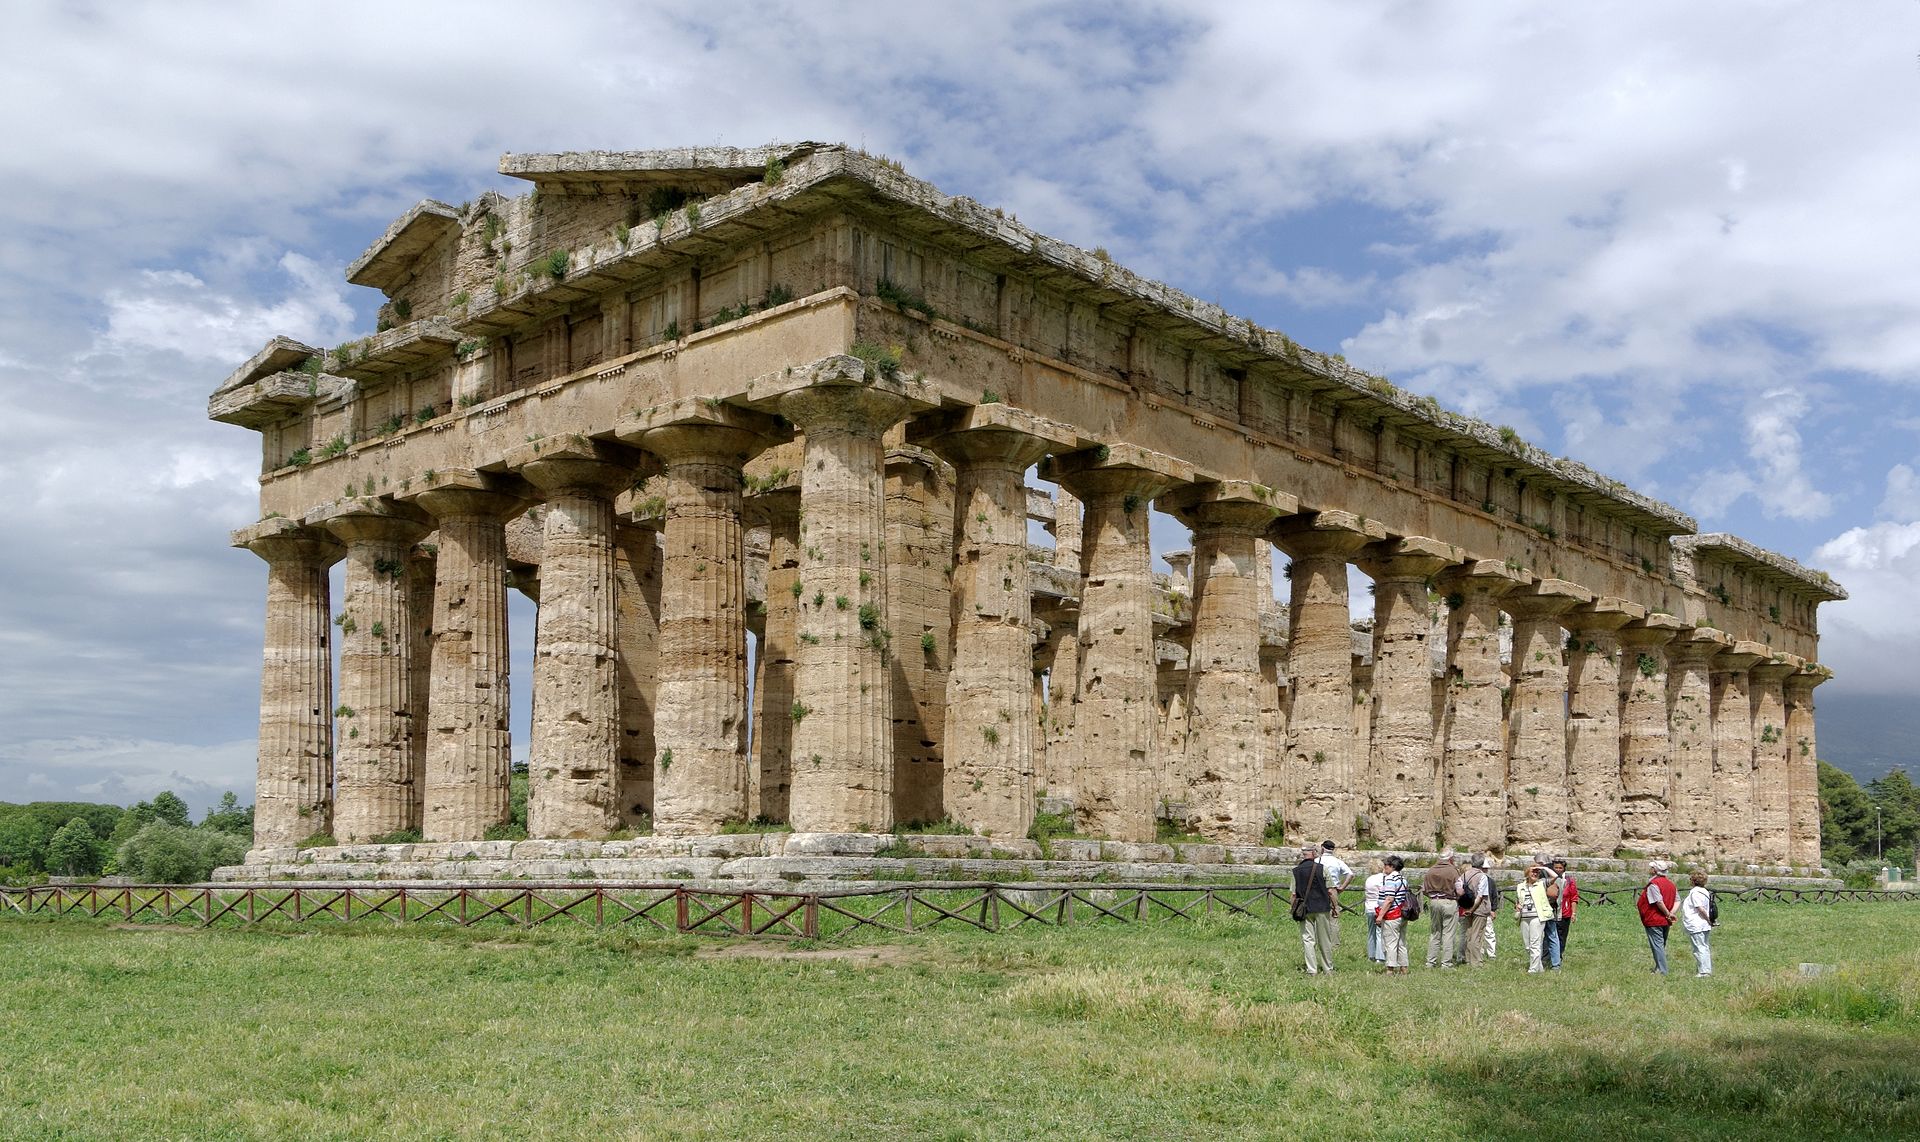 Aperto a Pasqua il tempio di Nettuno a Paestum: orari e biglietti